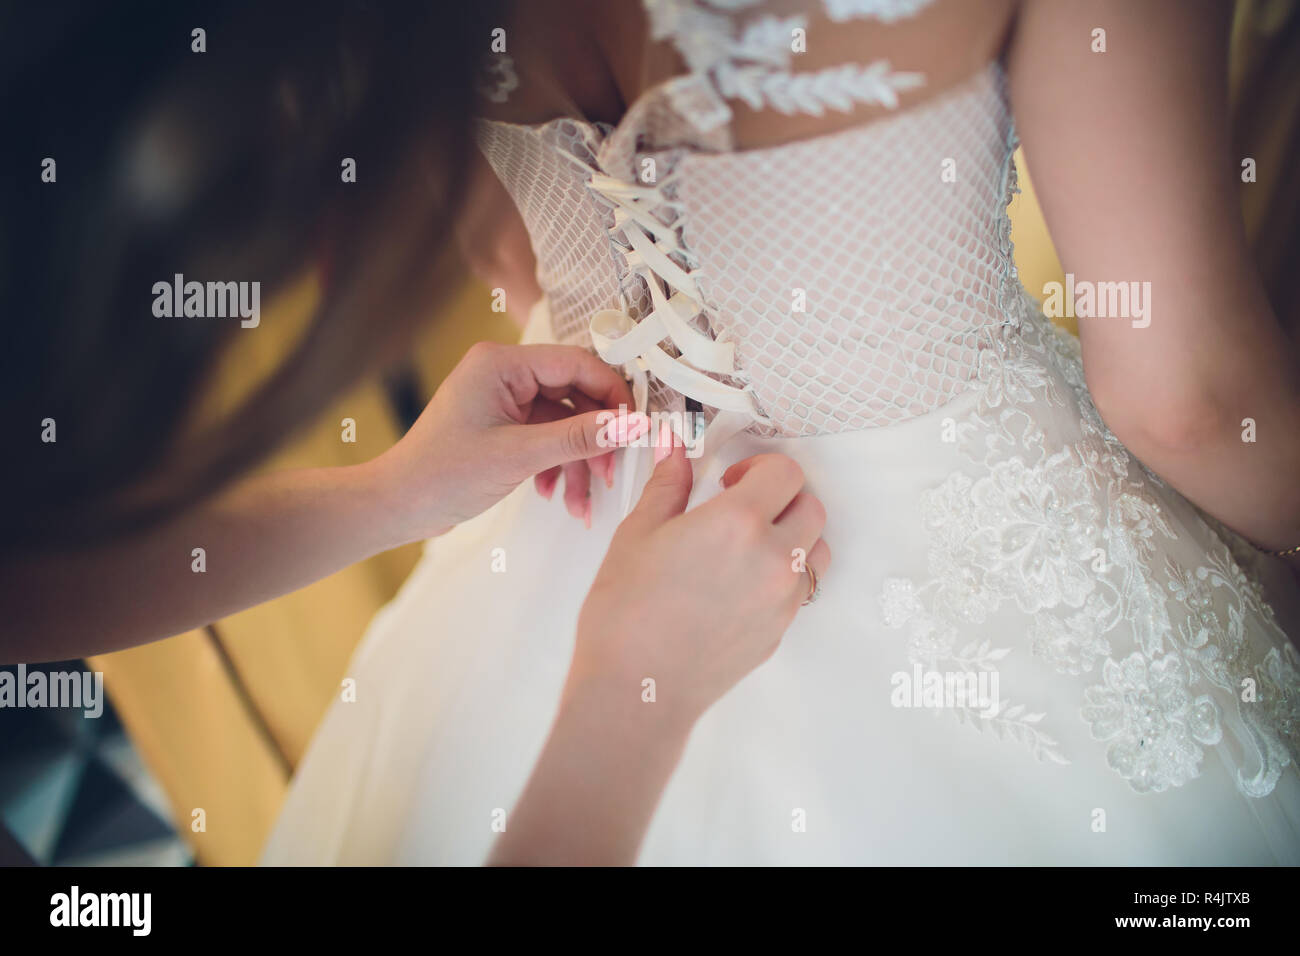 Brautjungfer Das Binden Einer Schleife Auf Elegante Hochzeit Einer Braut Kleid Stockfotografie Alamy